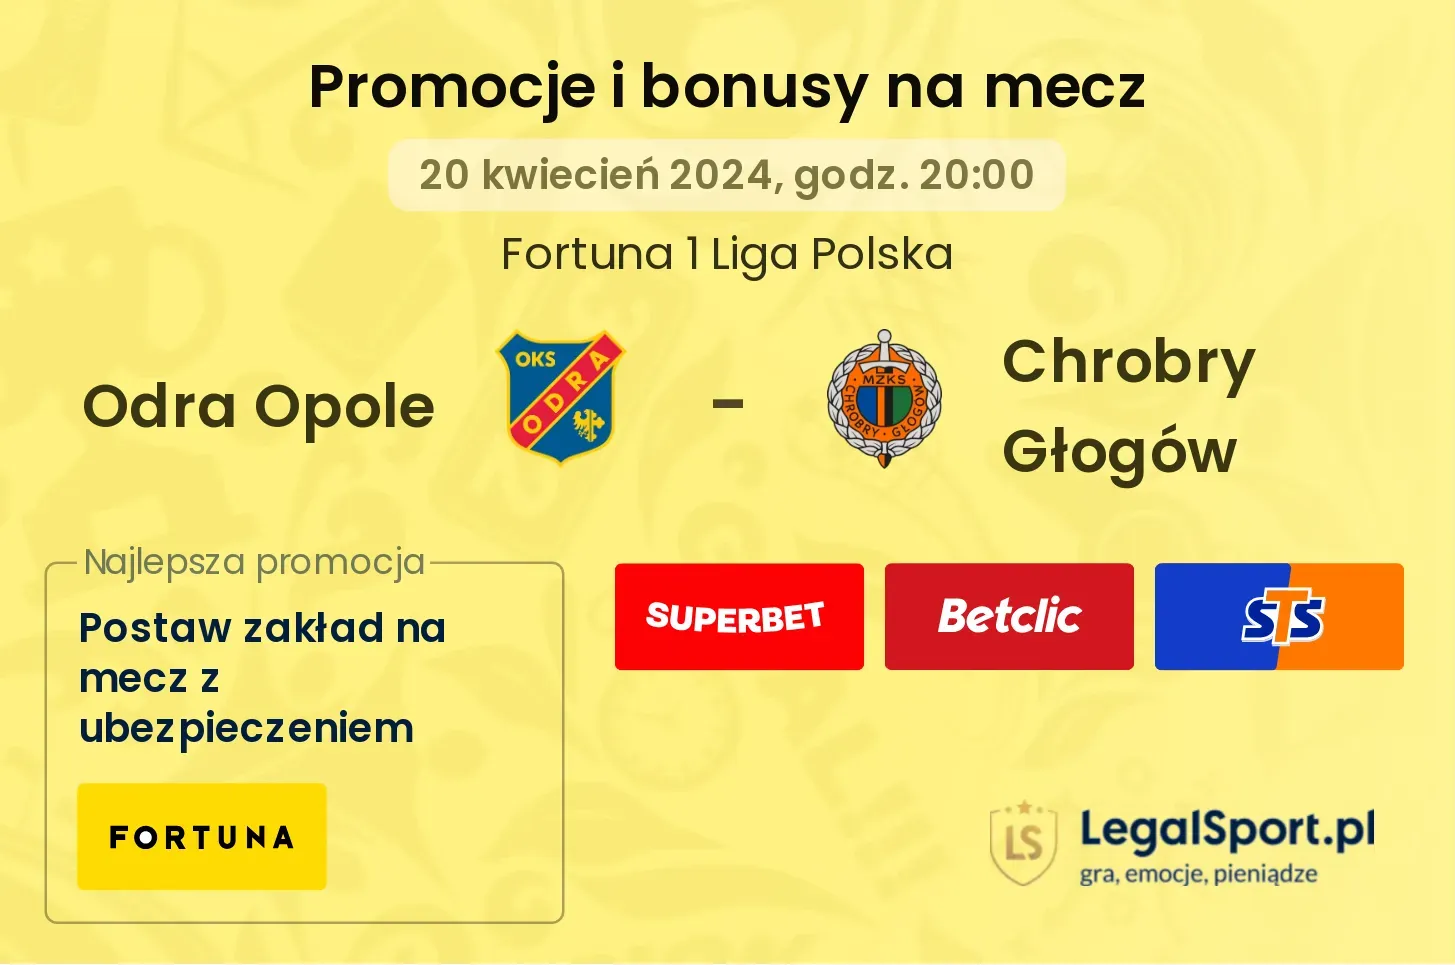 Odra Opole - Chrobry Głogów promocje bonusy na mecz